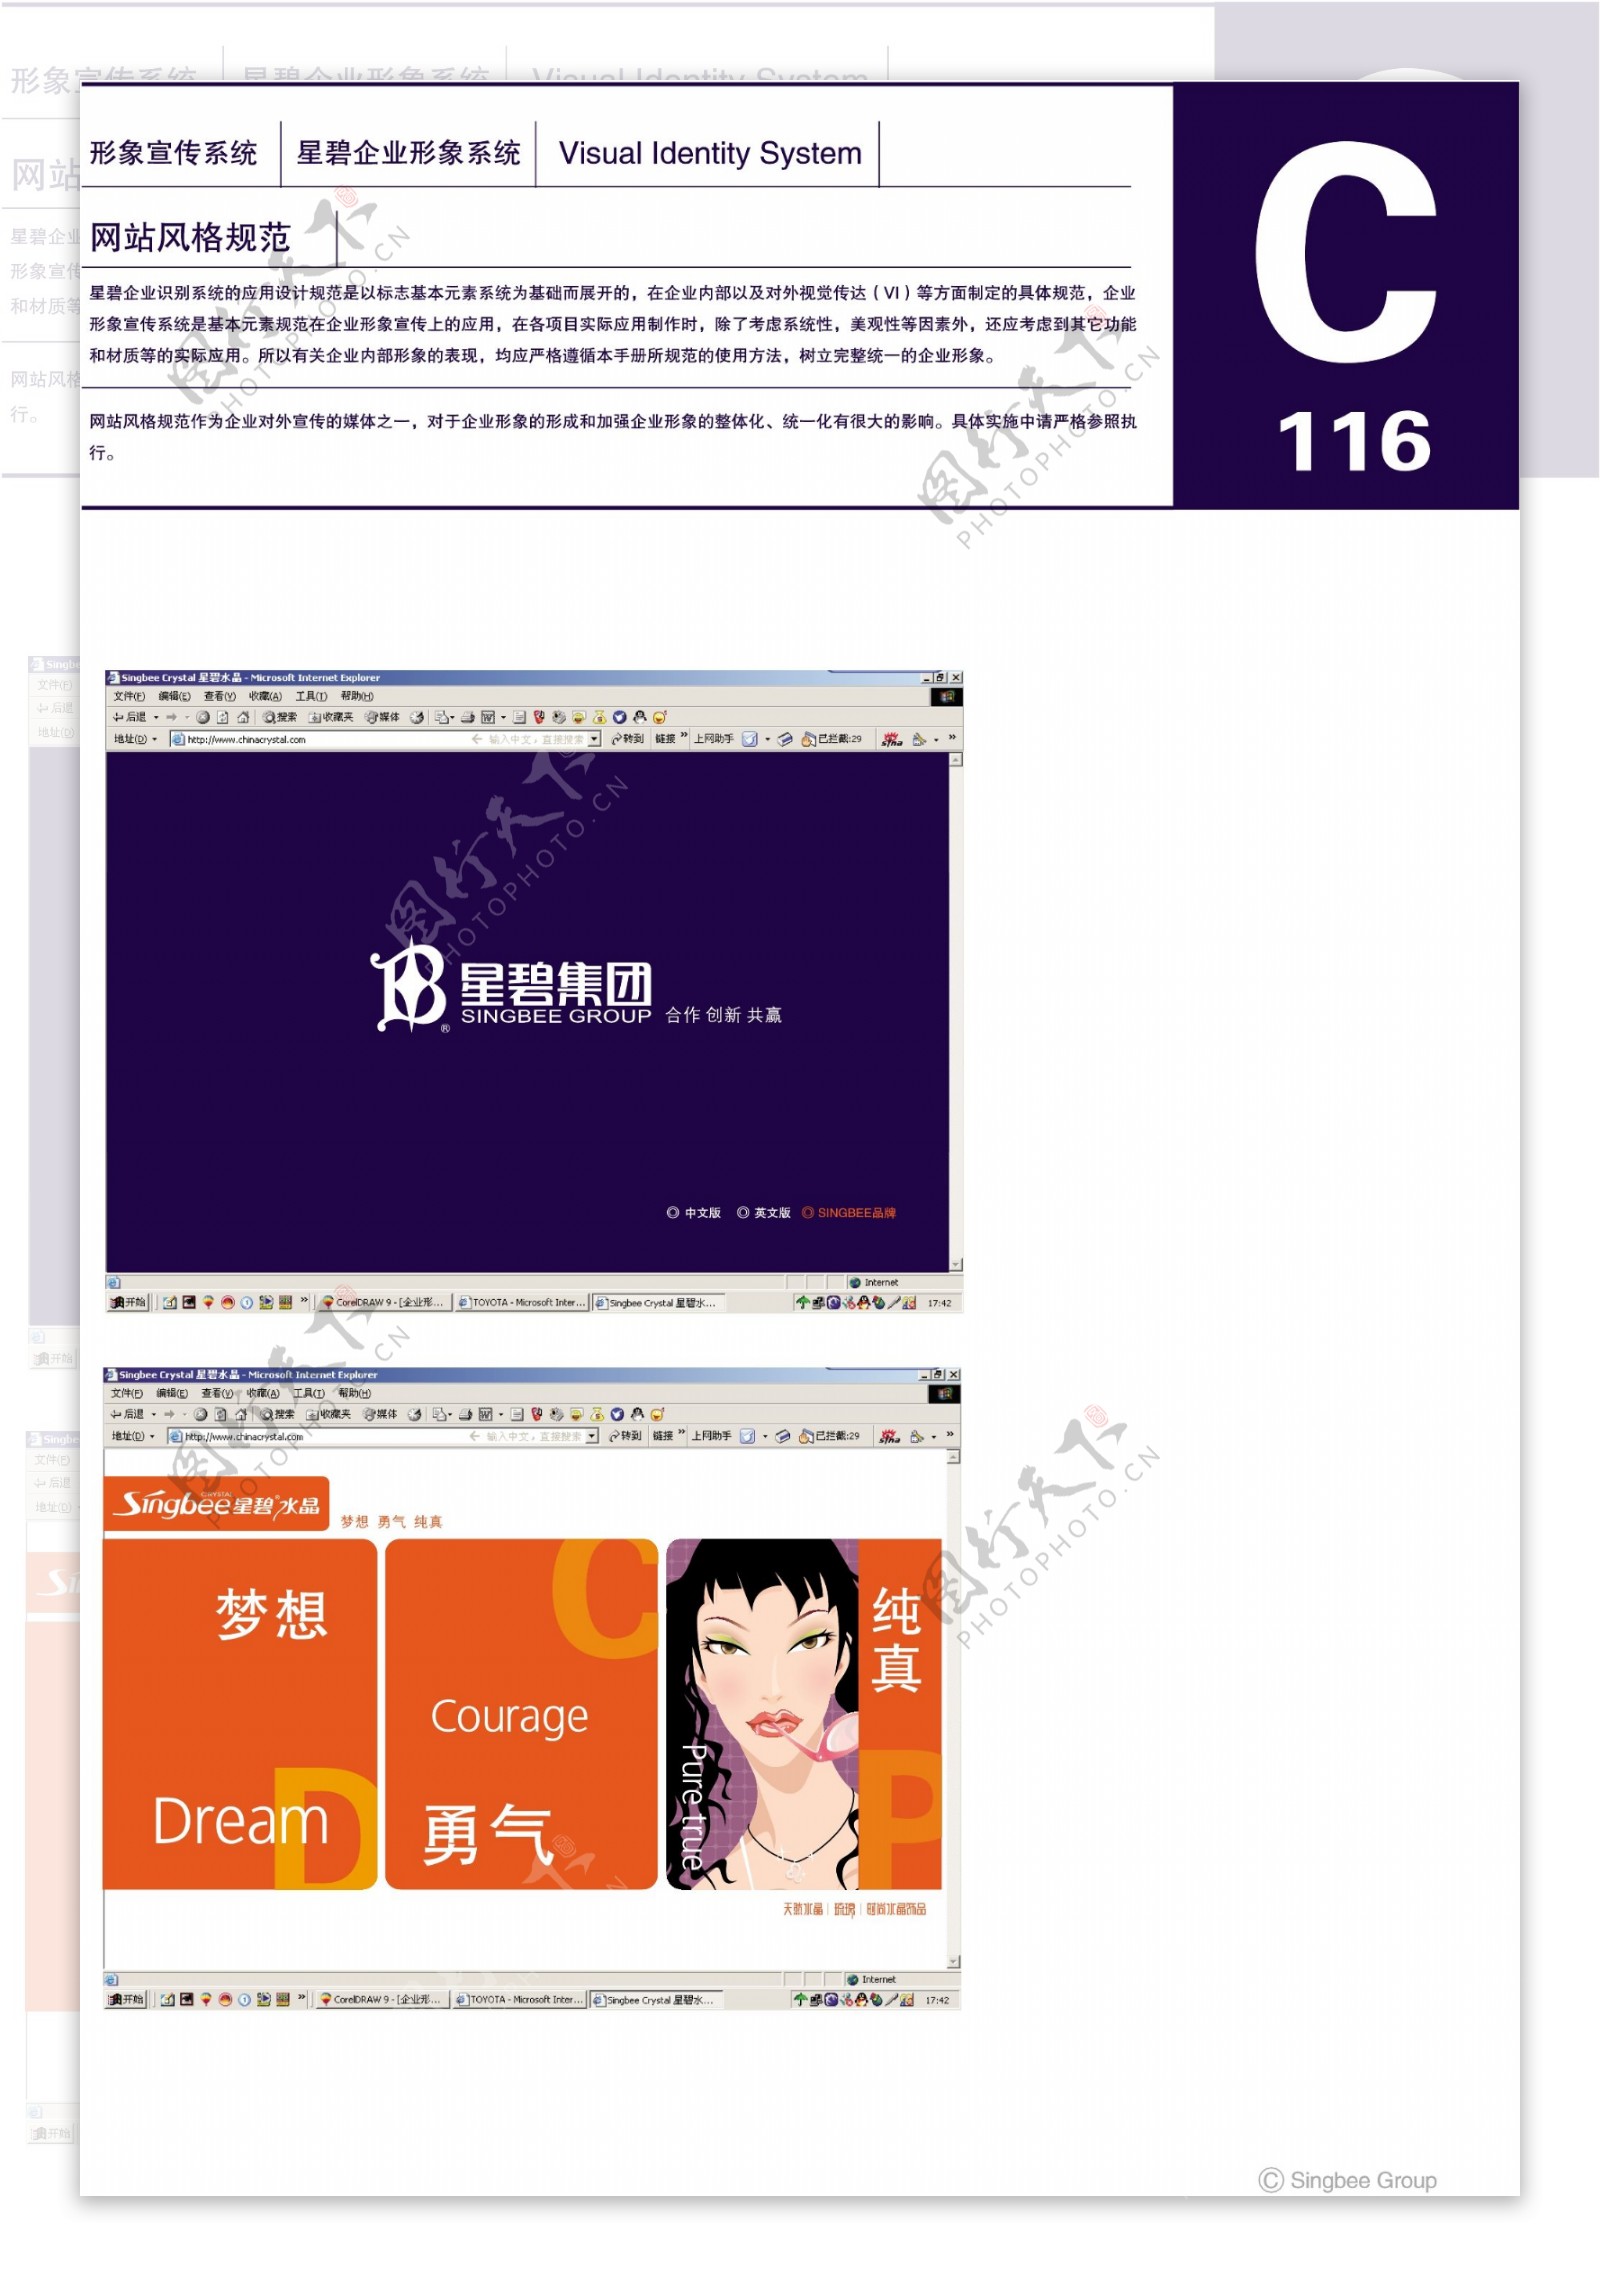 杭州星碧水晶VI矢量CDR文件VI设计VI宝典企业形象宣传系统规范